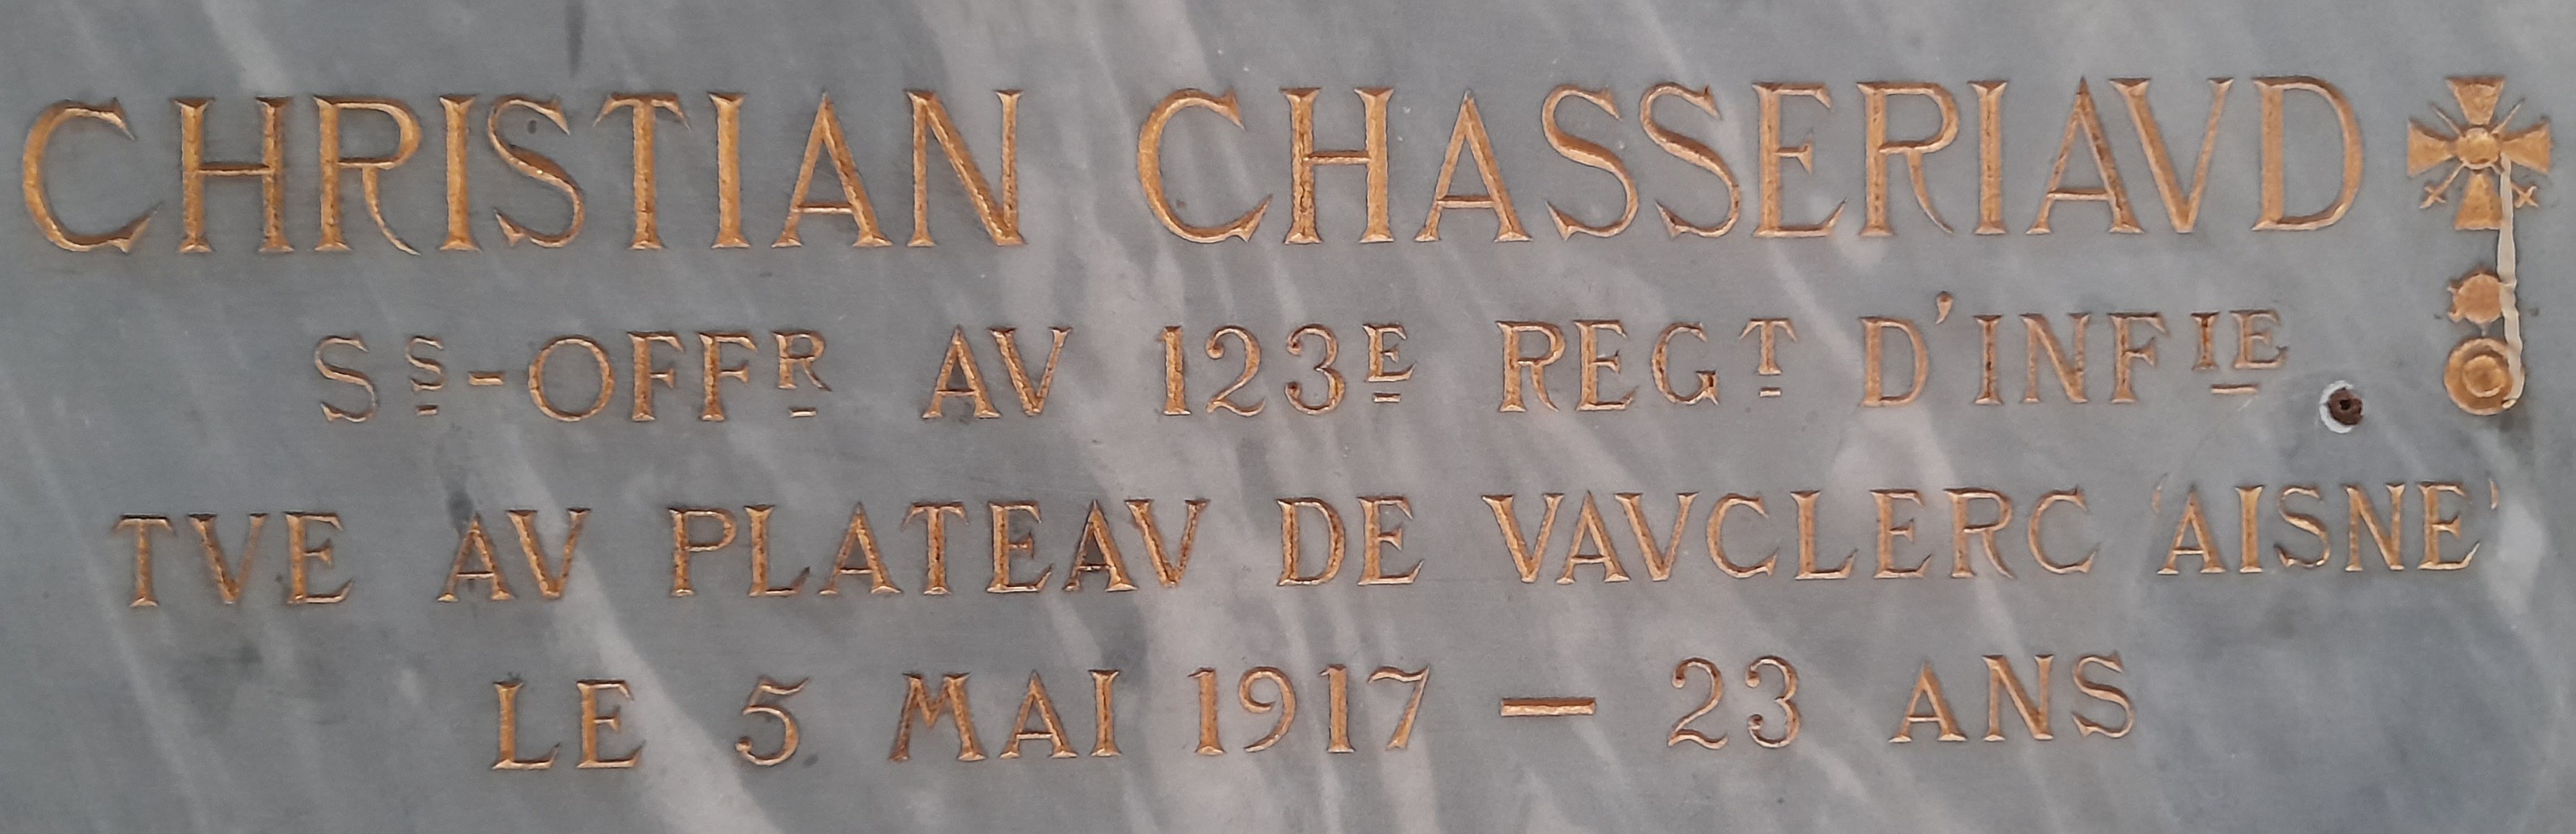 Chasseriaud Christian plaques commémoratives de la Cathédrale Saint Barthélémy La Rochelle (17)